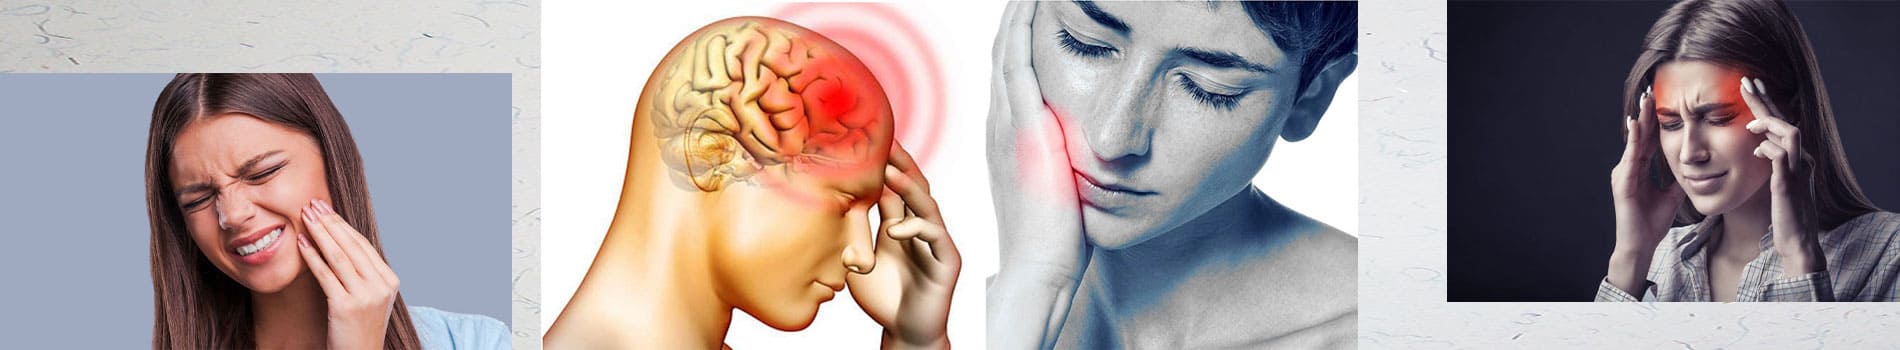 سردرد و دندان درد چه رابطه ای با هم دارند؟